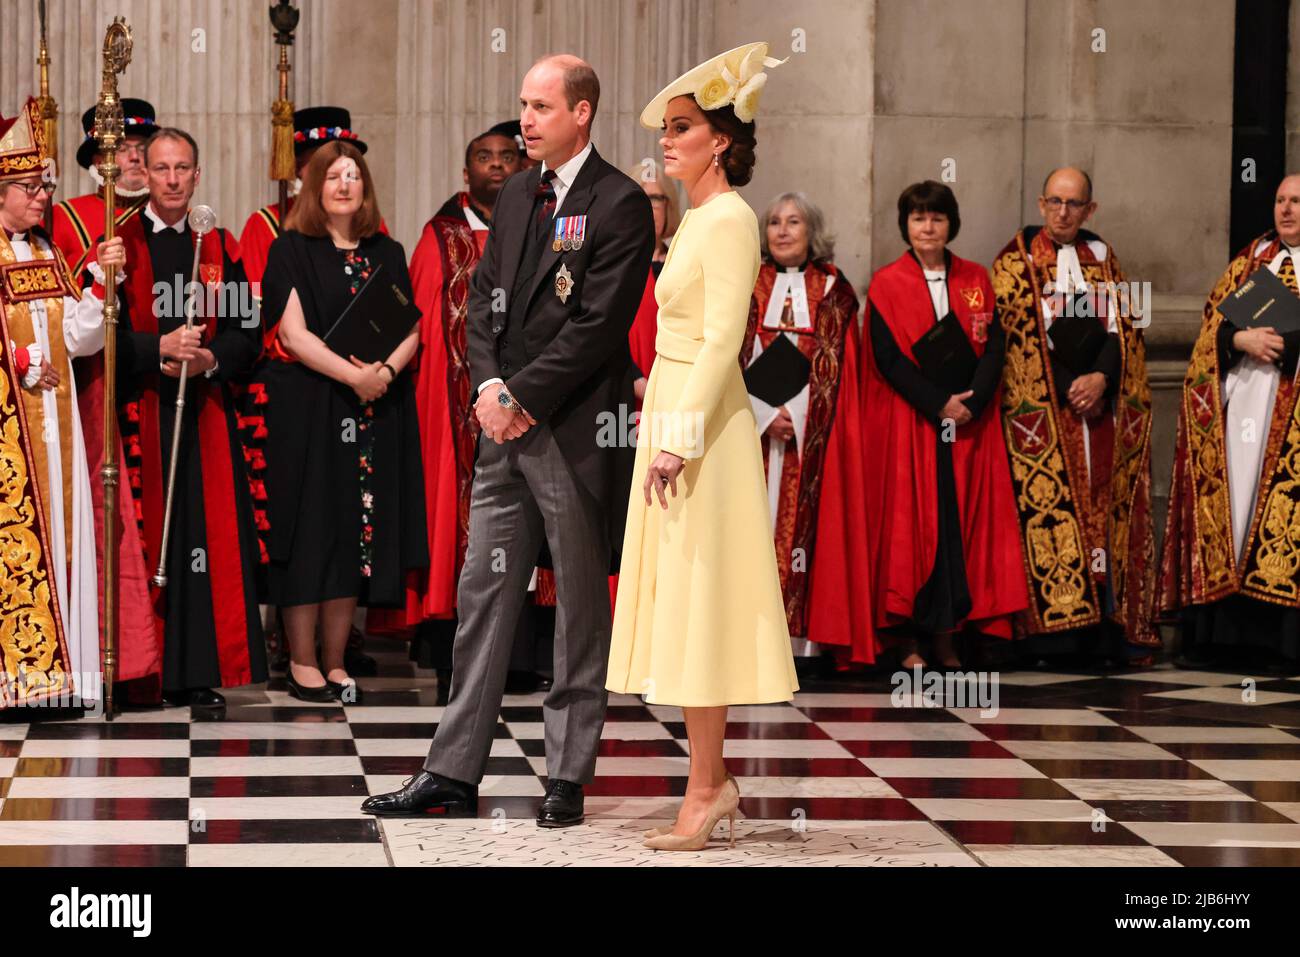 Der Herzog und die Herzogin von Cambridge kommen zum Nationalgottesdienst in der St. Paul's Cathedral, London, am zweiten Tag der Feierlichkeiten zum Platin-Jubiläum von Königin Elizabeth II. Bilddatum: Freitag, 3. Juni 2022. Stockfoto